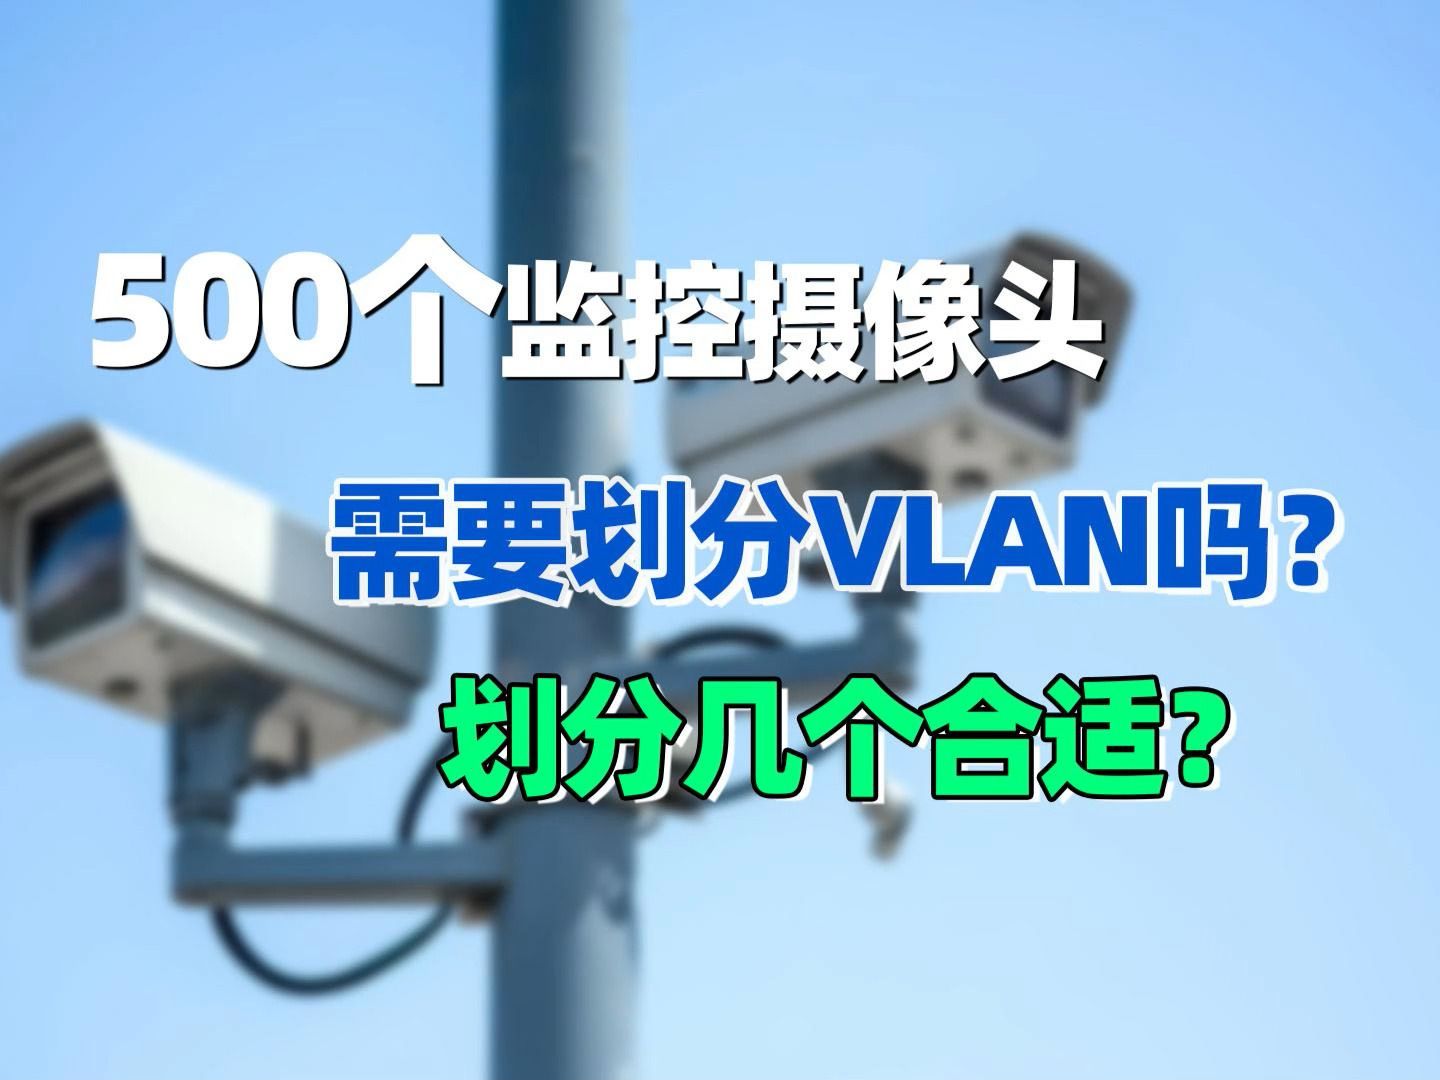 500个摄像头需要划分VLAN吗？划分几个合适？